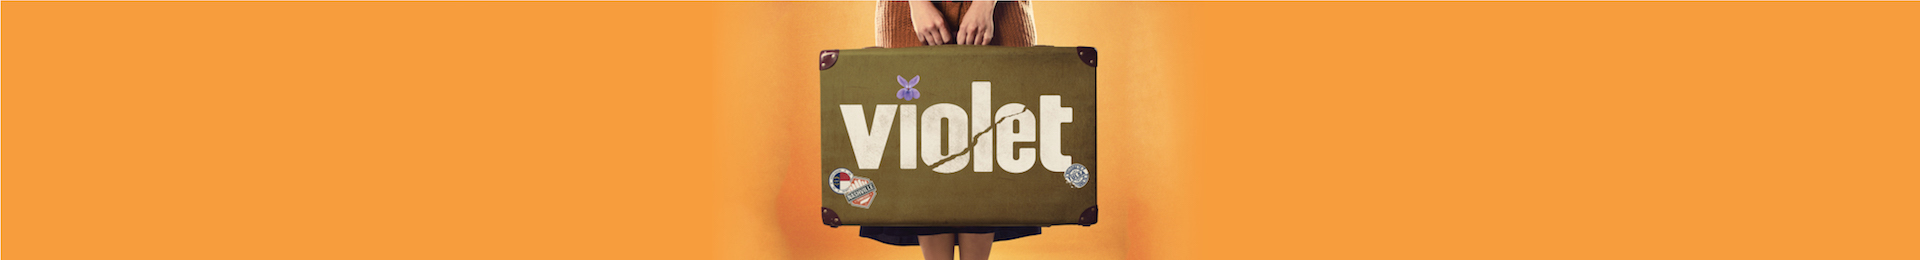 Violet banner image